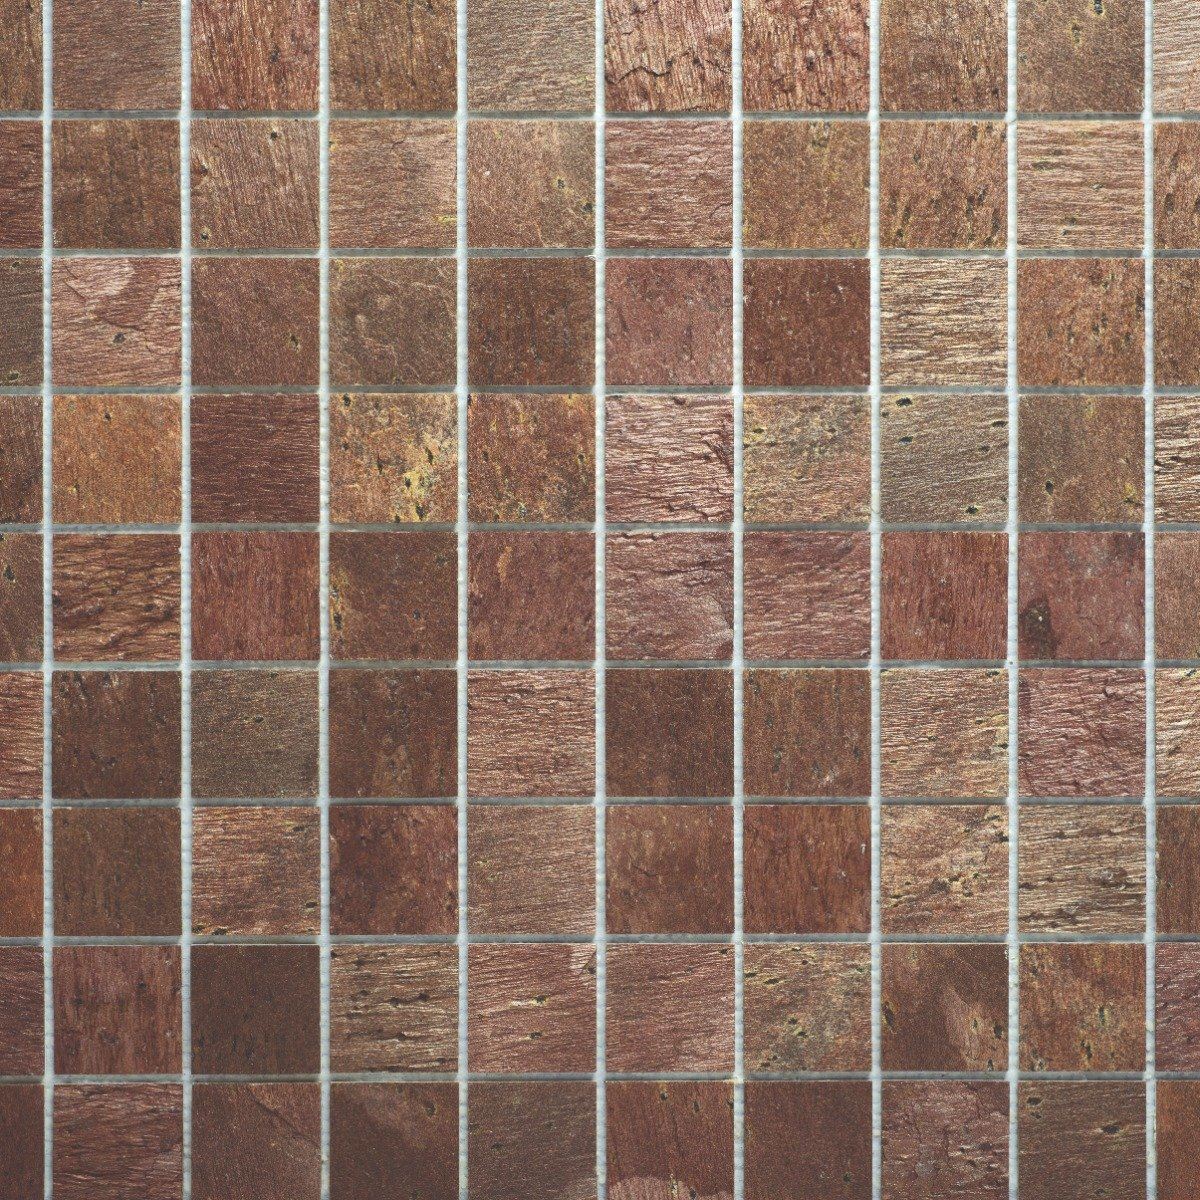 Slicedstone Bathroom Mosaic Mars Stone (50x50mm squares) 1000 x 500mm